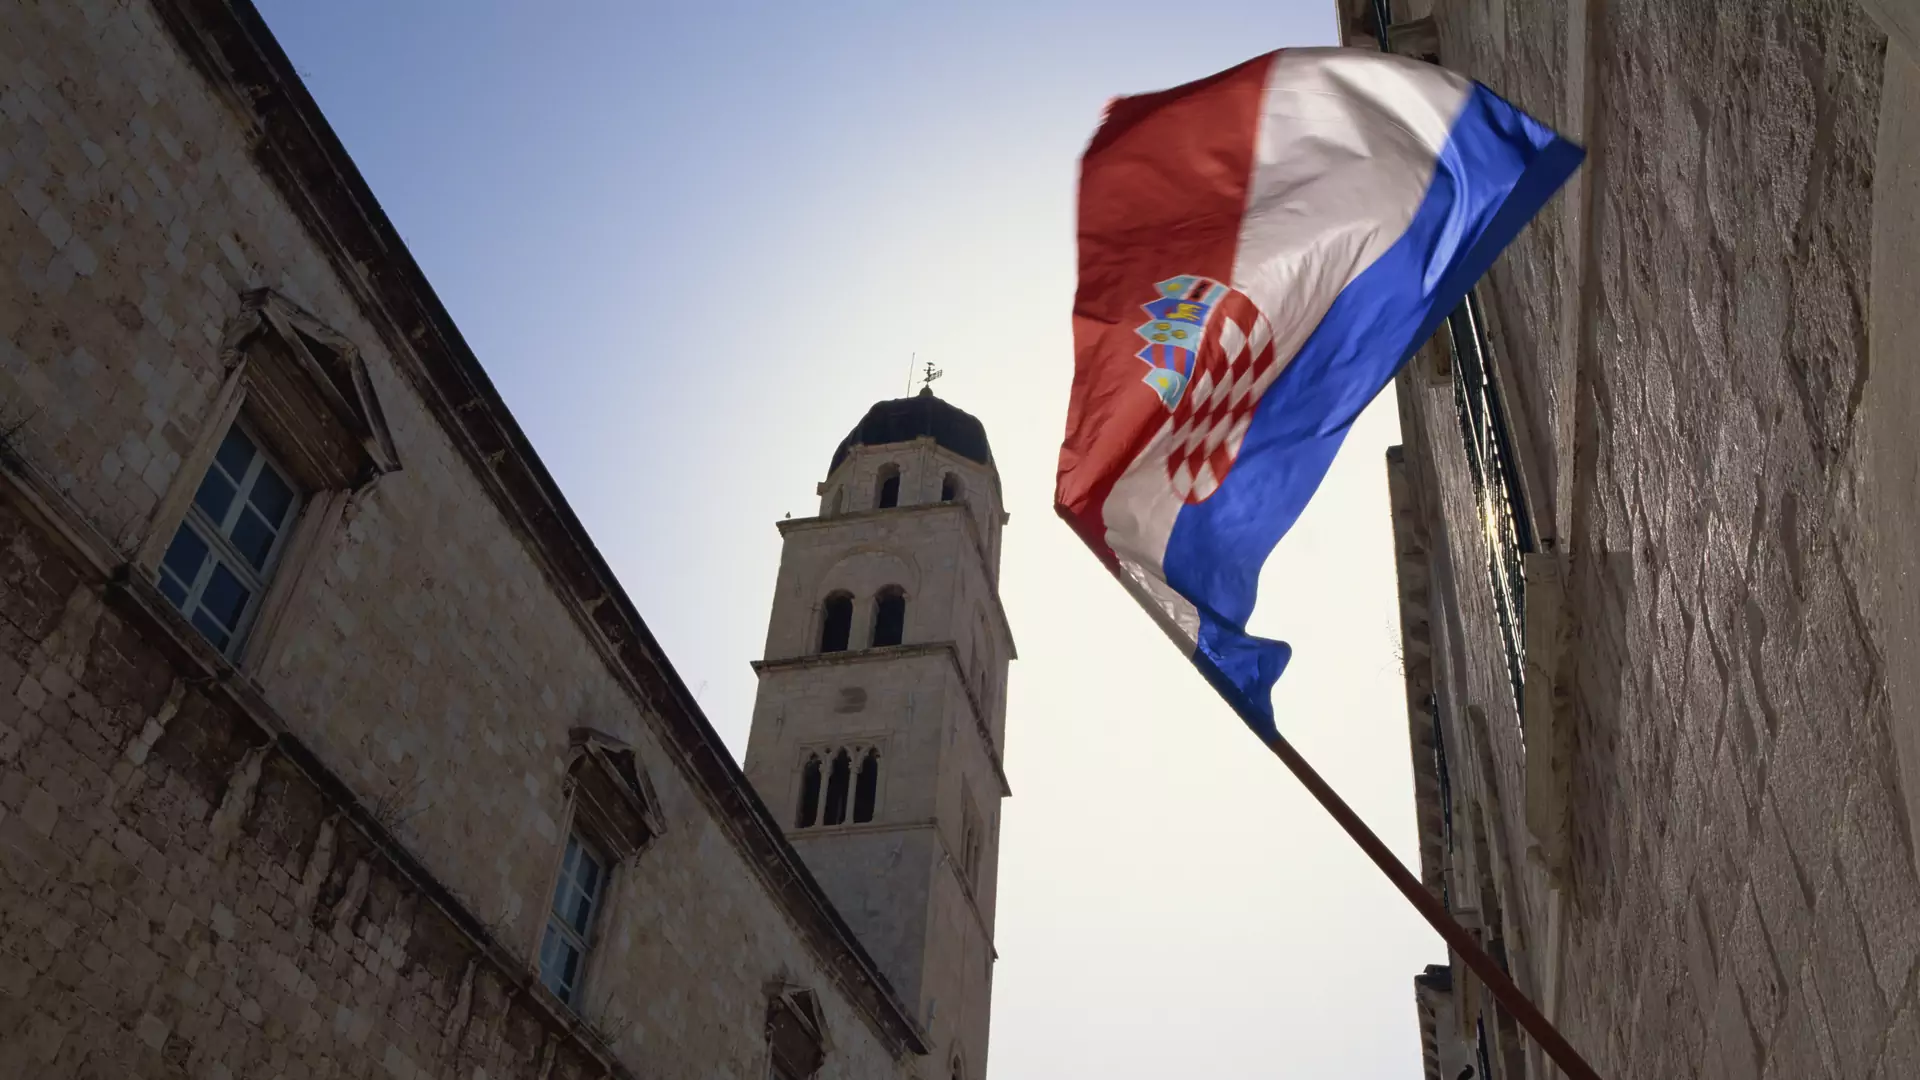 Domy i działki za 60 groszy. Chorwacja szuka nowych mieszkańców